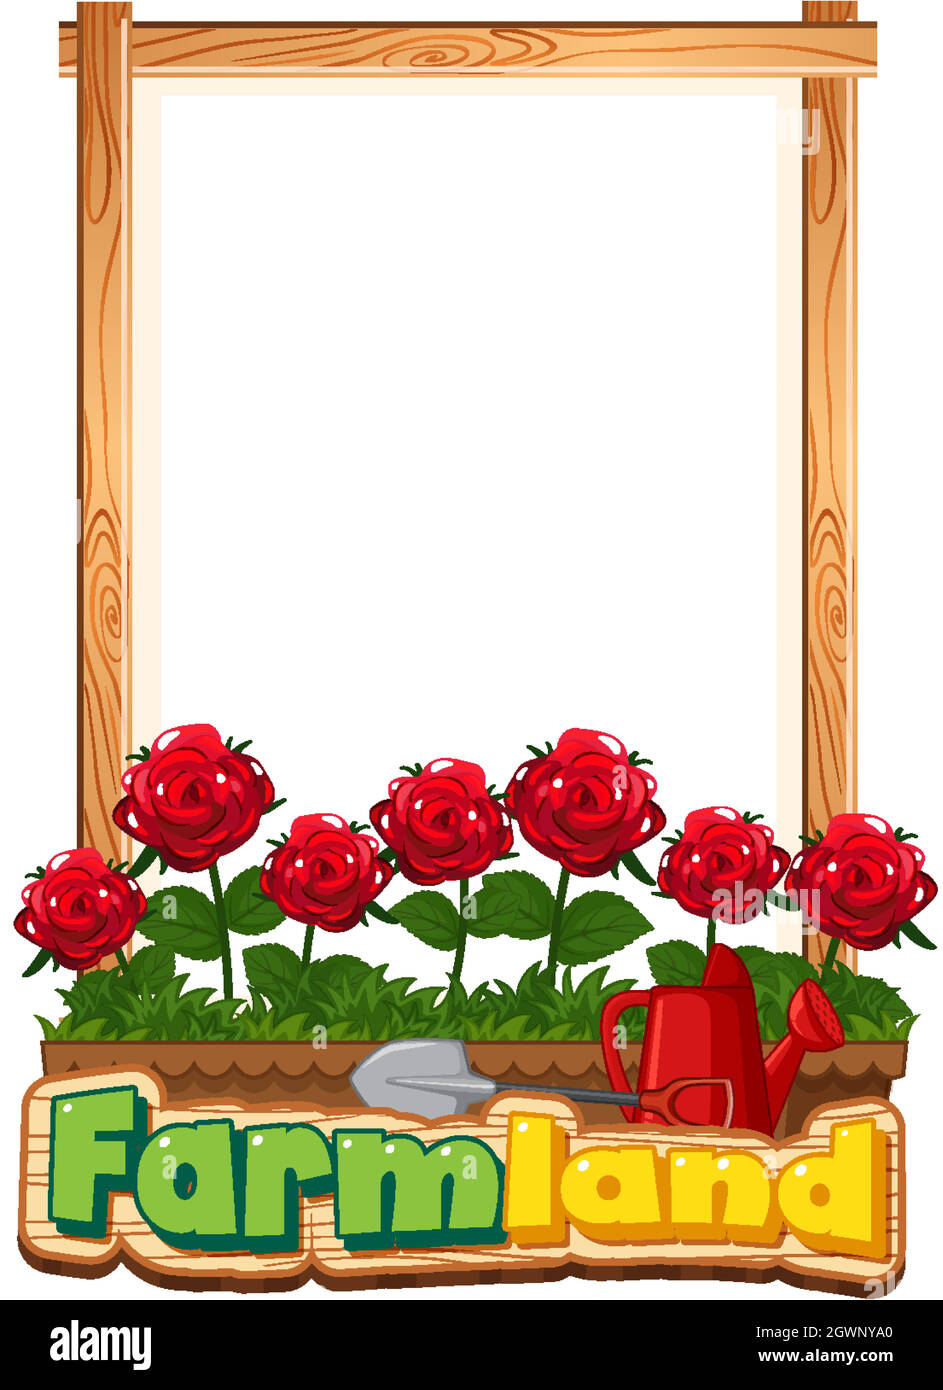 Umrandung Schablone Design mit roten Rosen im Garten Stock Vektor